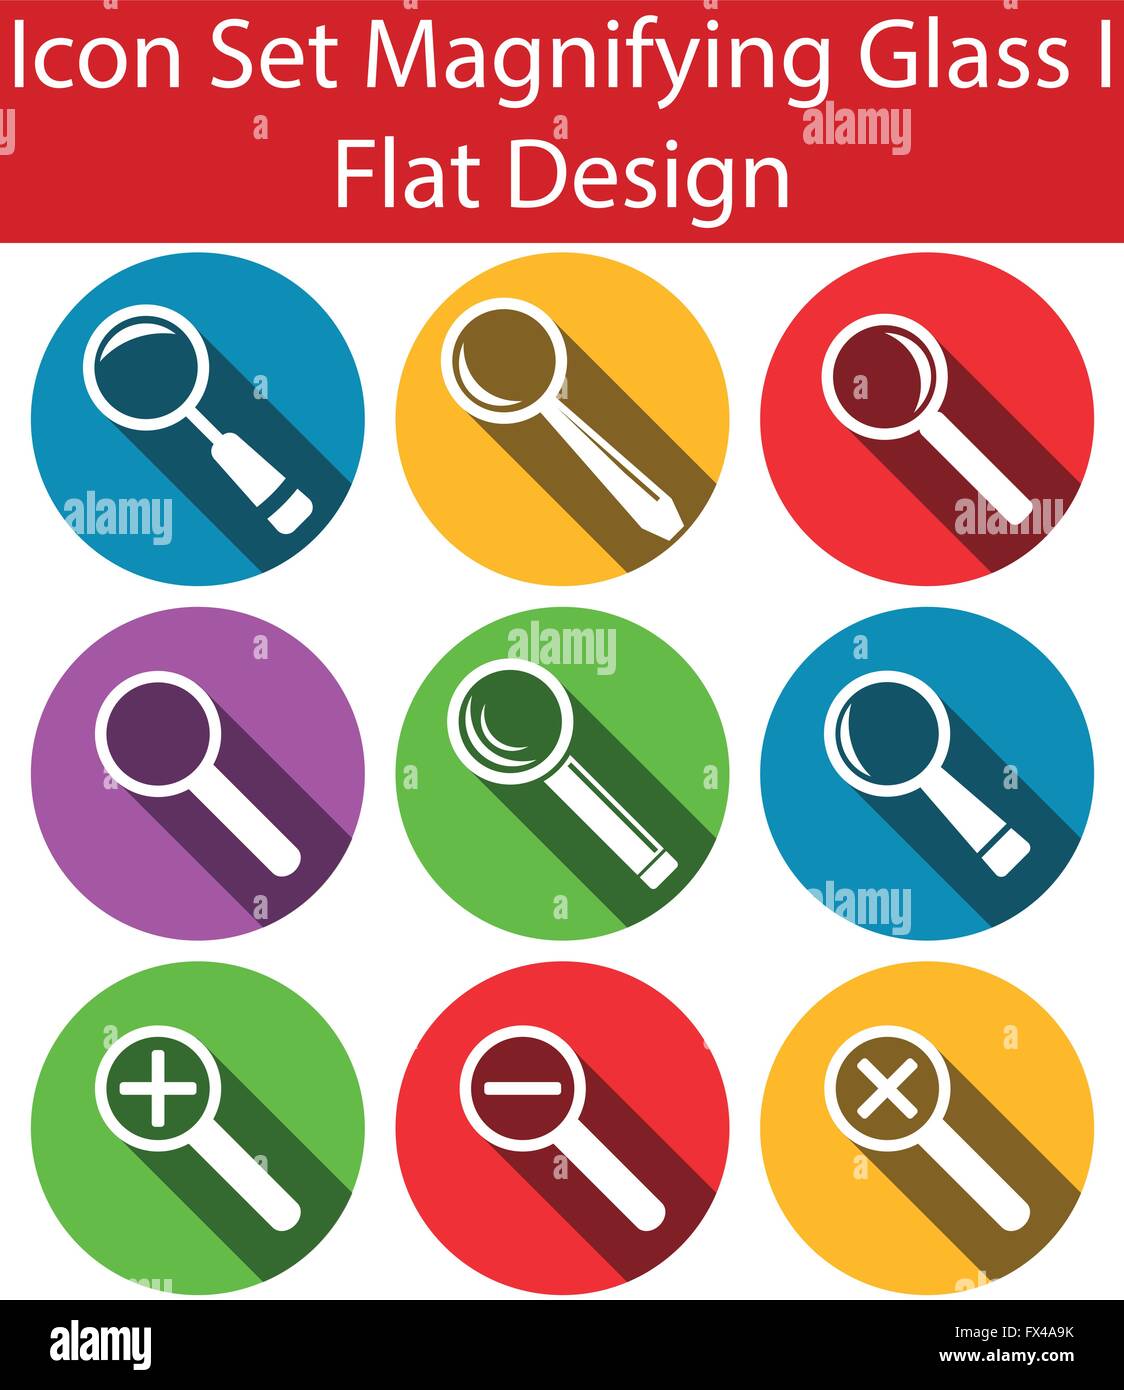 Design-flachen Design Icon Set Magnifying Glass I mit 9 Symbole für kreative eine Grafik im Web verwenden Stock Vektor